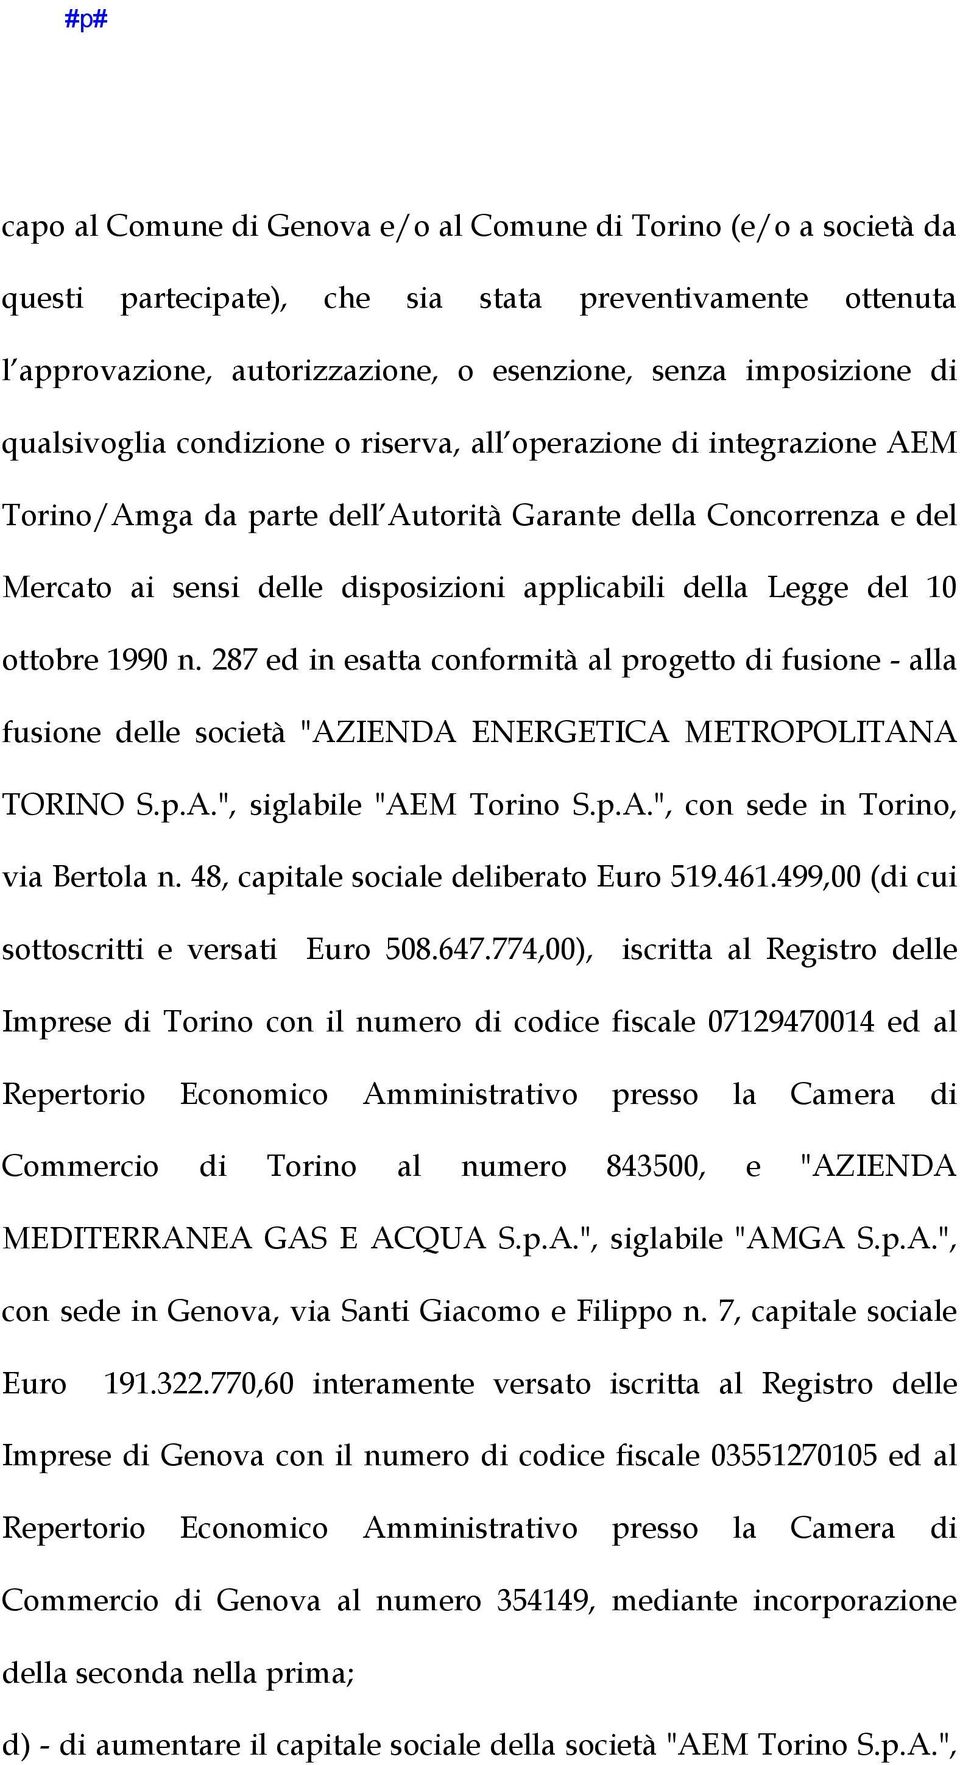 del 10 ottobre 1990 n. 287 ed in esatta conformità al progetto di fusione - alla fusione delle società "AZIENDA ENERGETICA METROPOLITANA TORINO S.p.A.", siglabile "AEM Torino S.p.A.", con sede in Torino, via Bertola n.